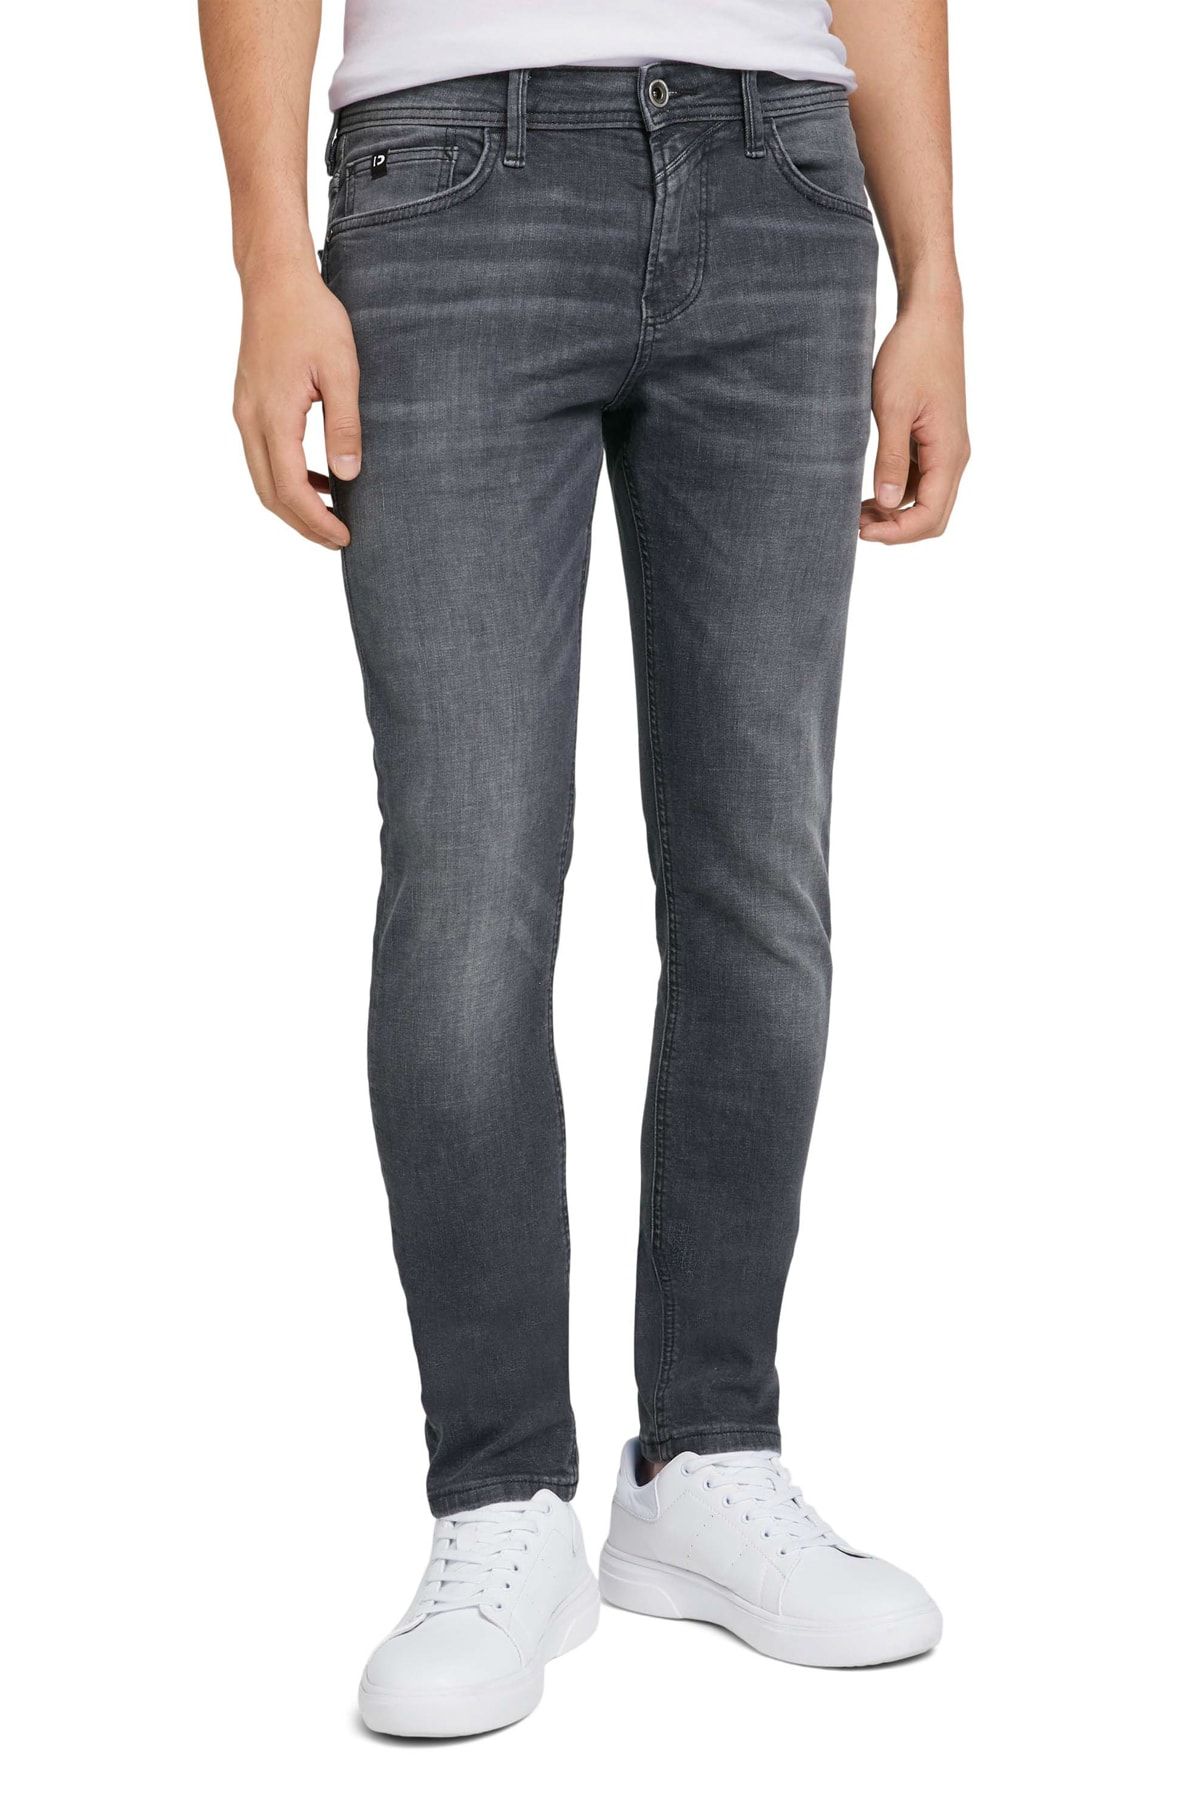 Tom Tailor Denim Jeans - Skinny - Gray Trendyol 